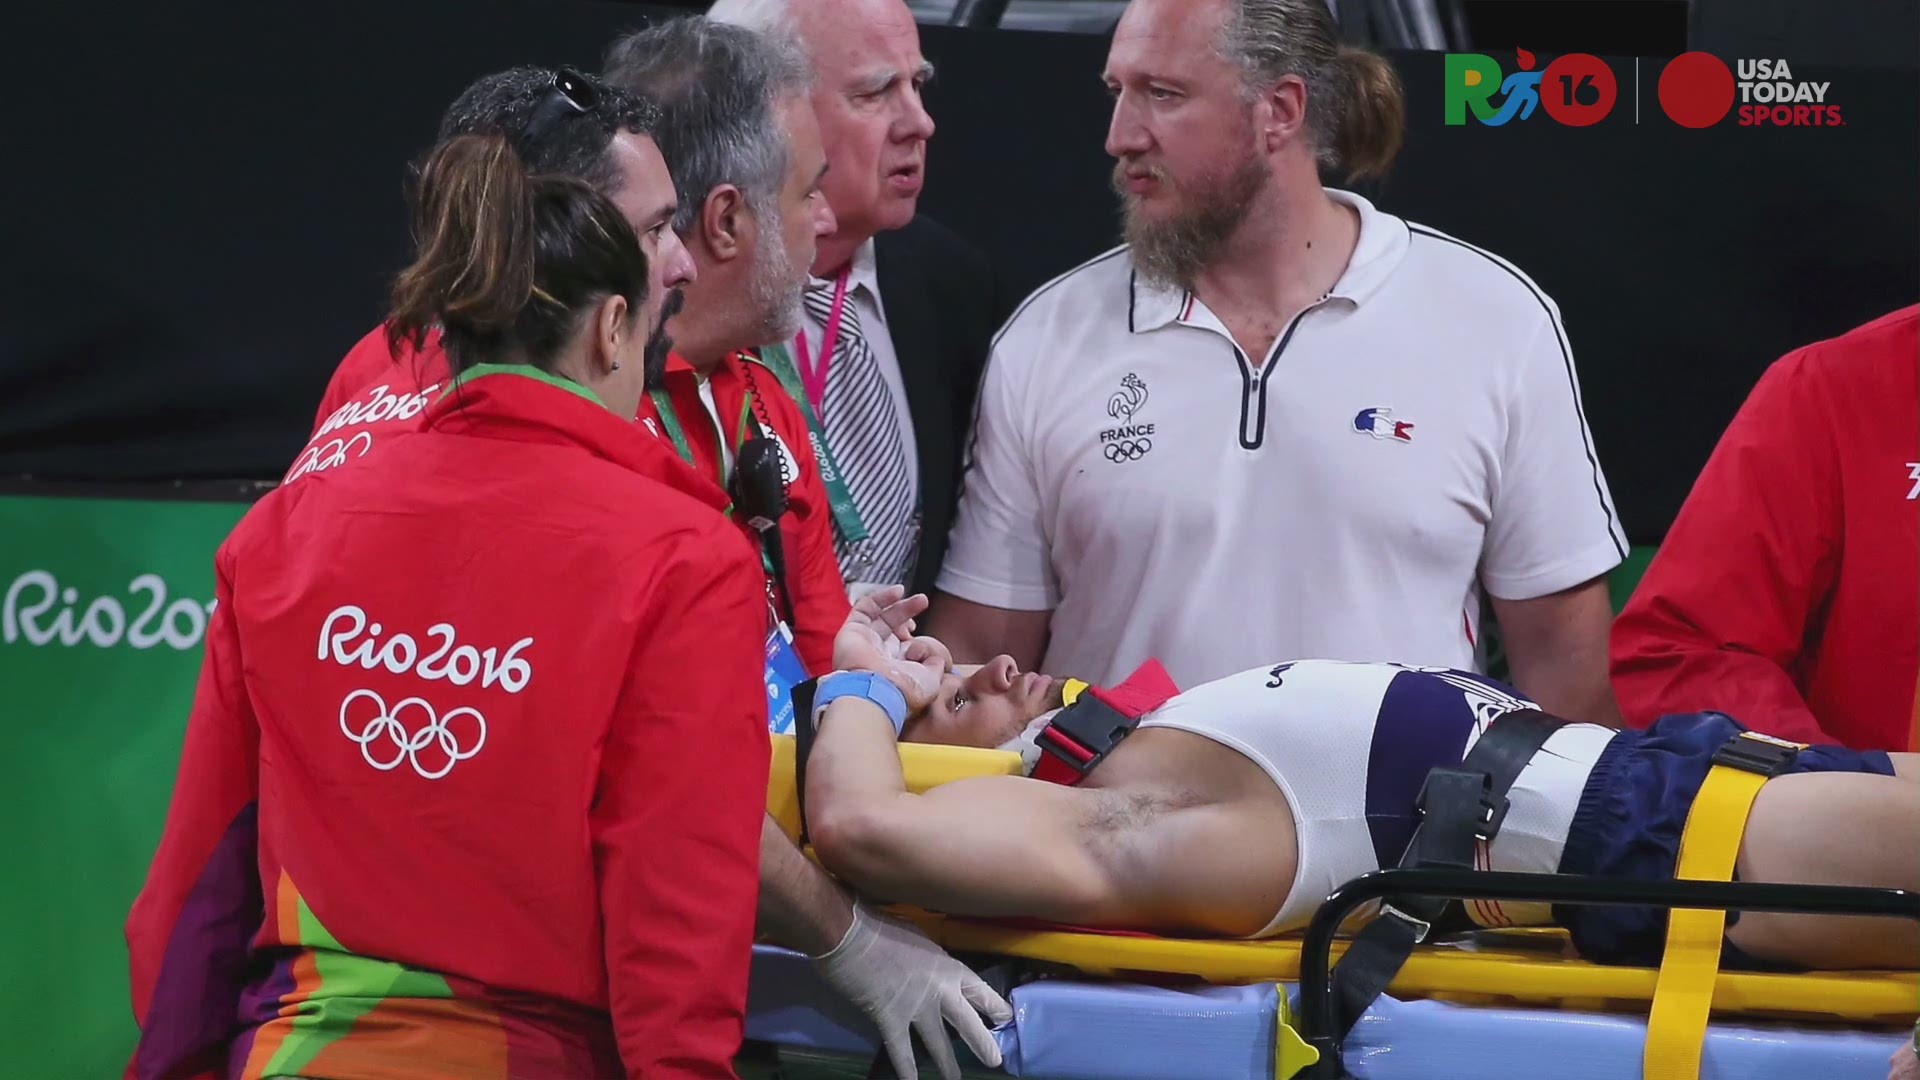 Injured Olympic gymnast Samir Ait Said put on stretcher ...